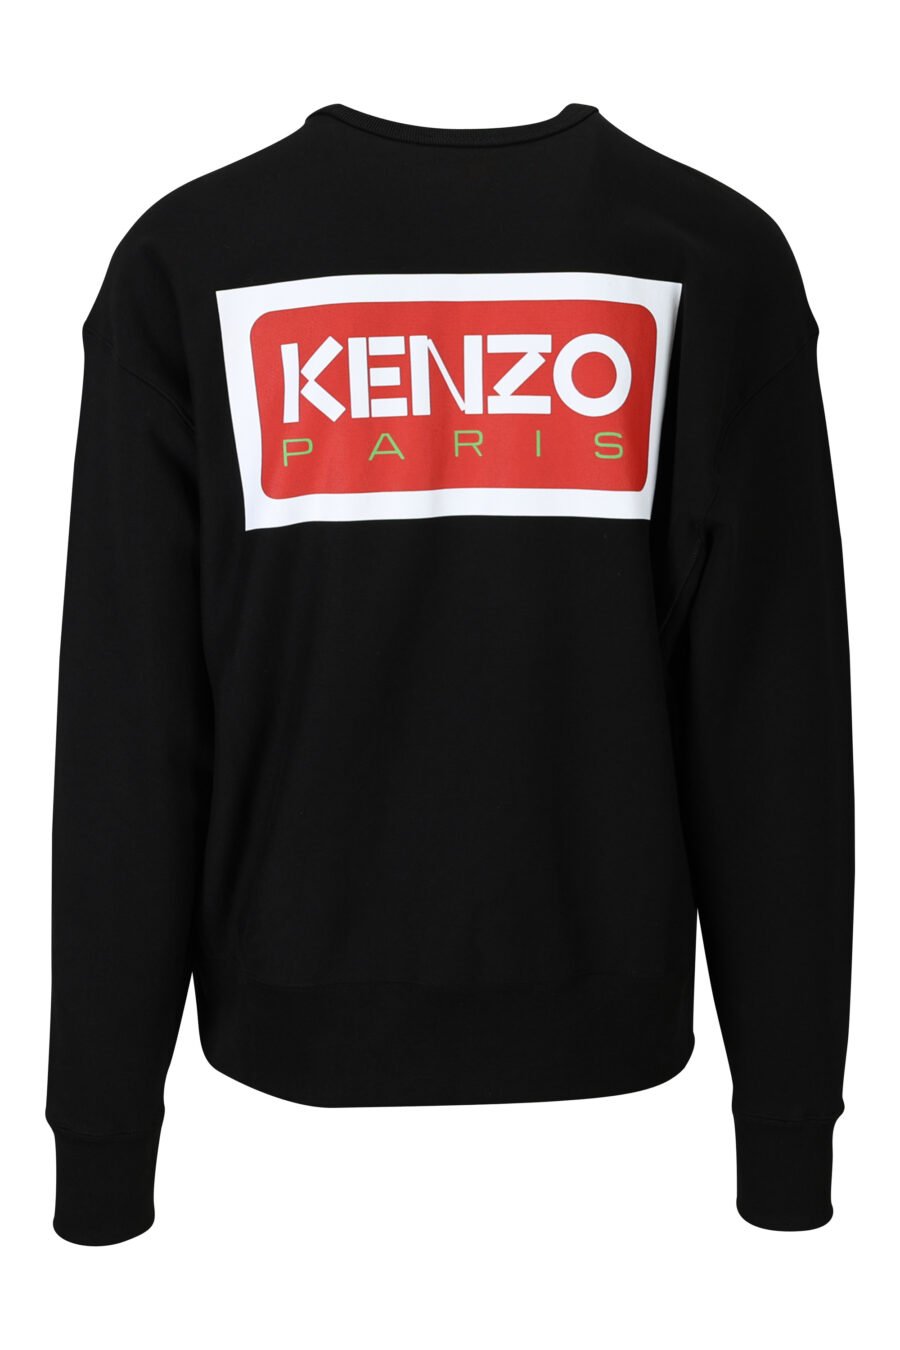 Schwarzes Sweatshirt in Übergröße mit Mini-Logo "kenzo paris" - 3612230537675 1